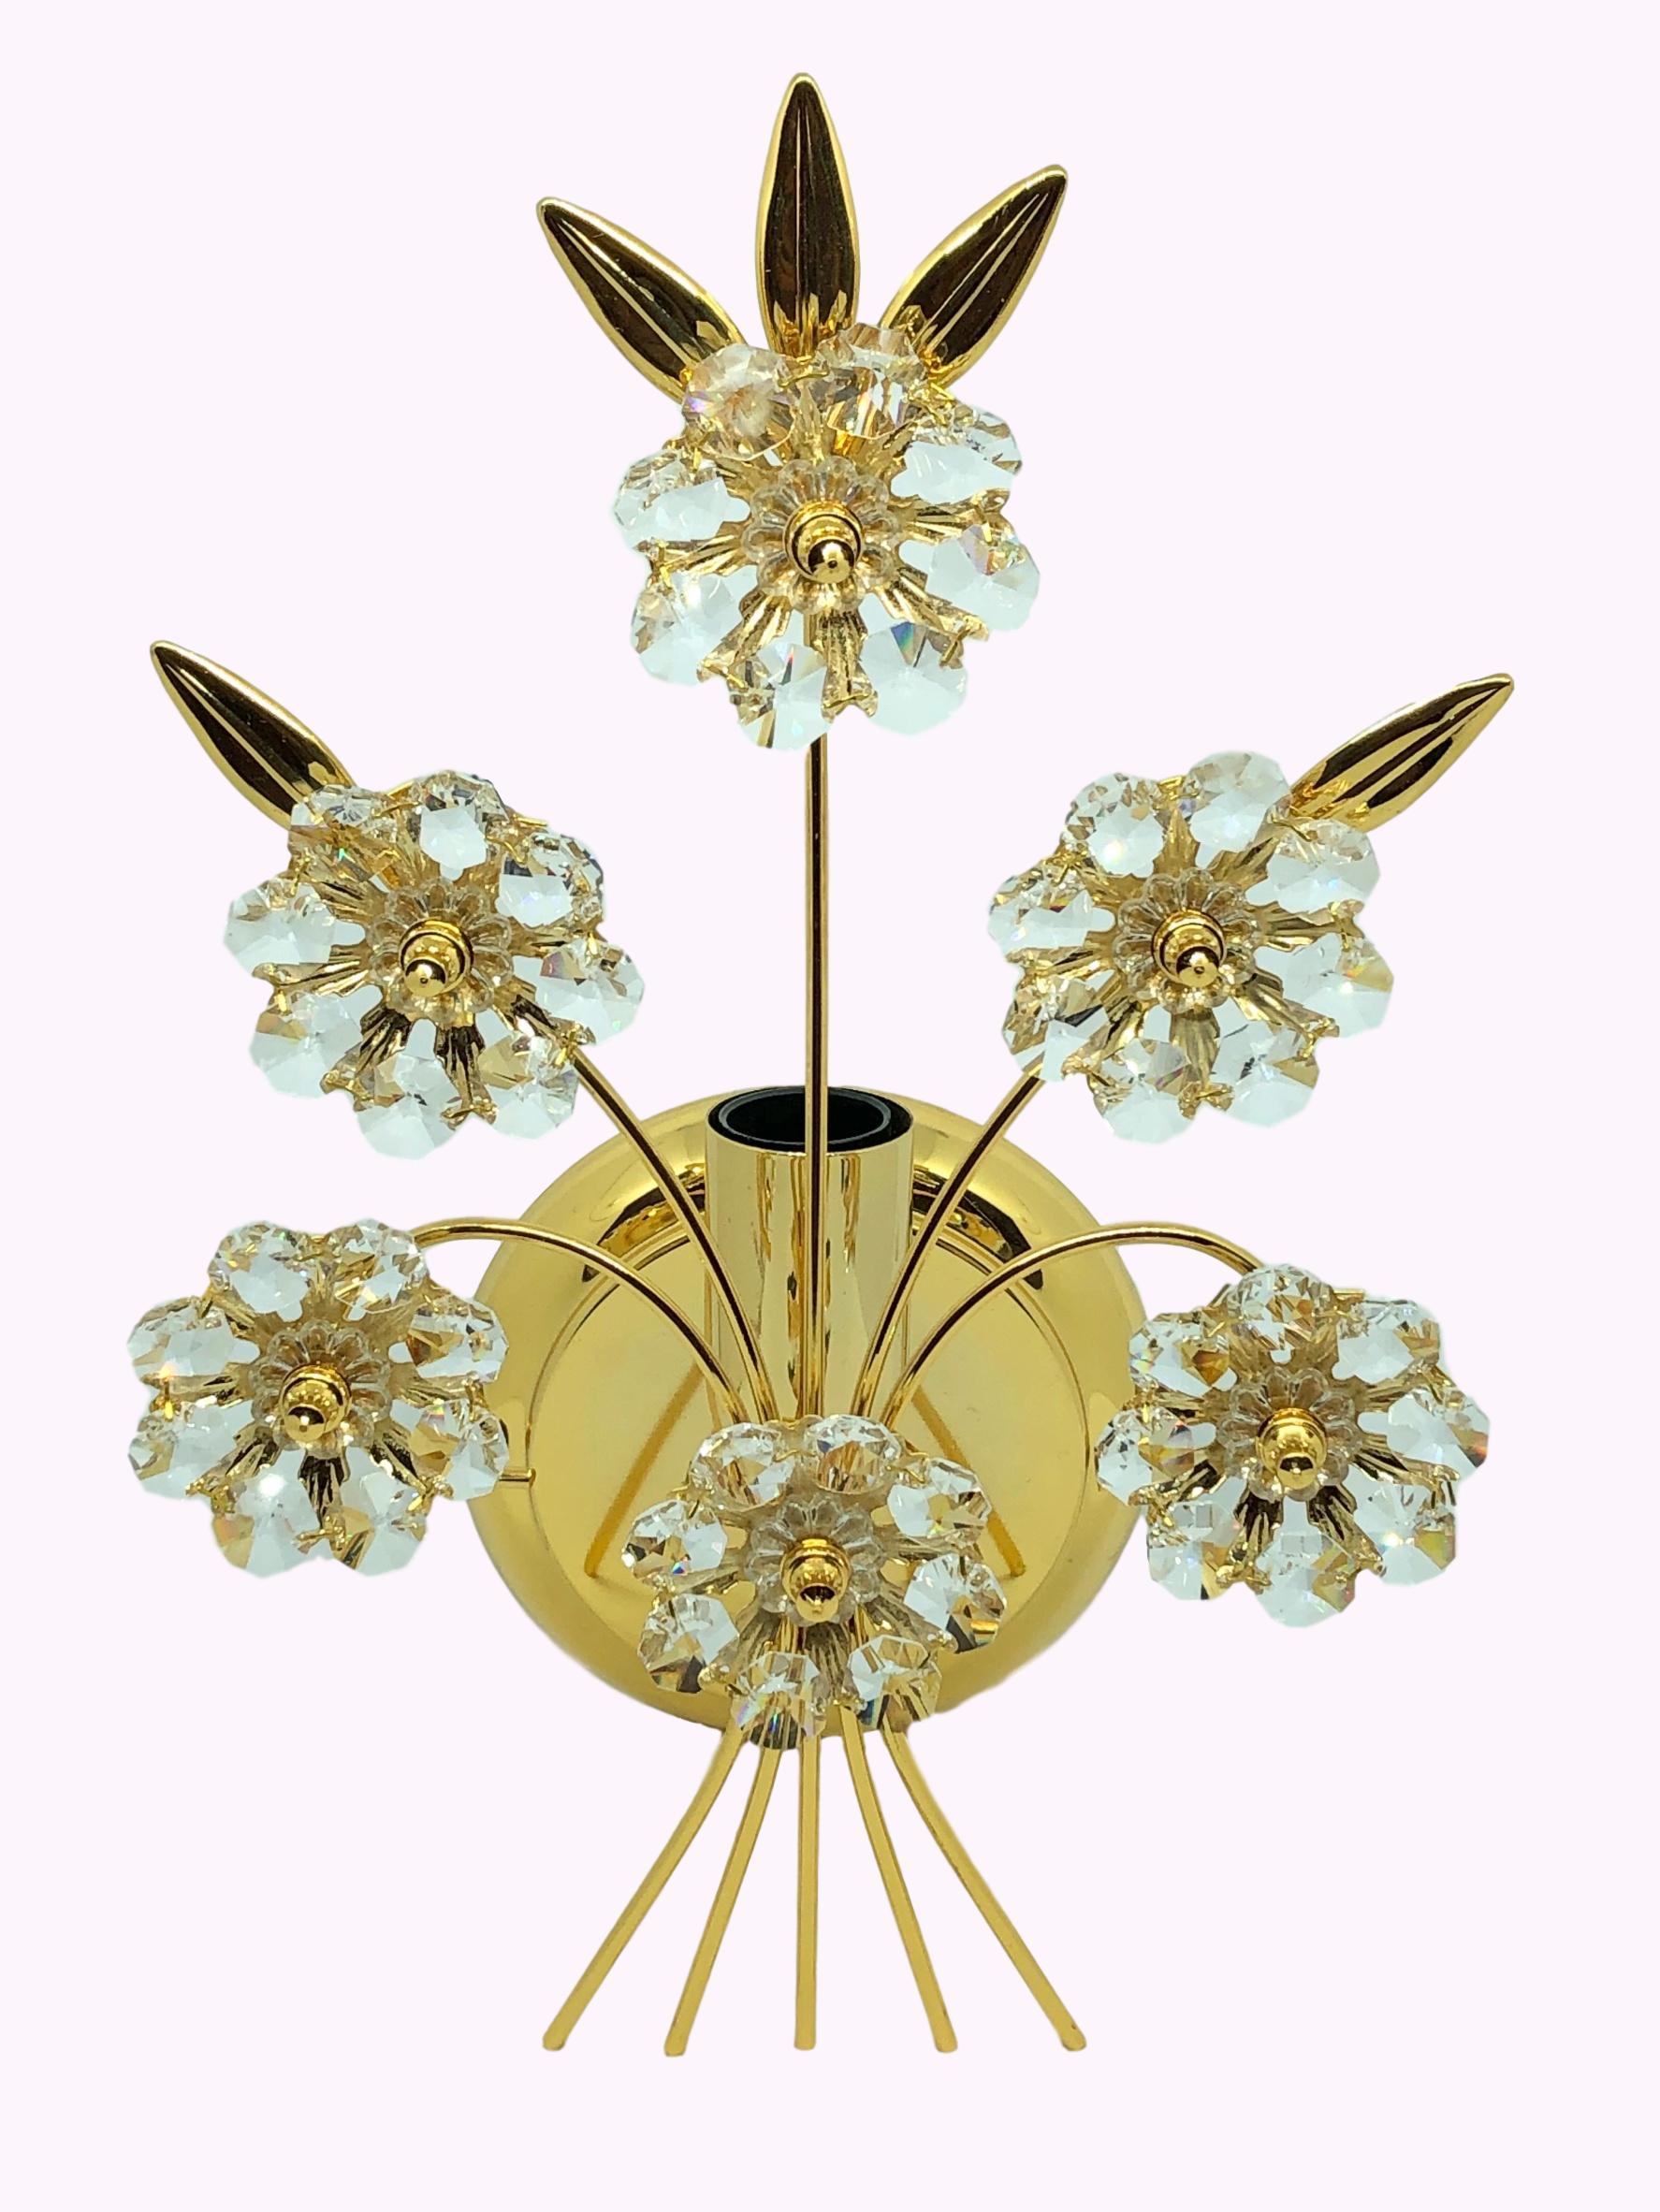 Une seule applique vintage en plaqué or avec des fleurs en cristal facetté, fabriquée par la société allemande Palwa. Le luminaire est équipé d'une douille E14 de style européen. Il nécessite une ampoule européenne E14 de type candélabre, jusqu'à 40